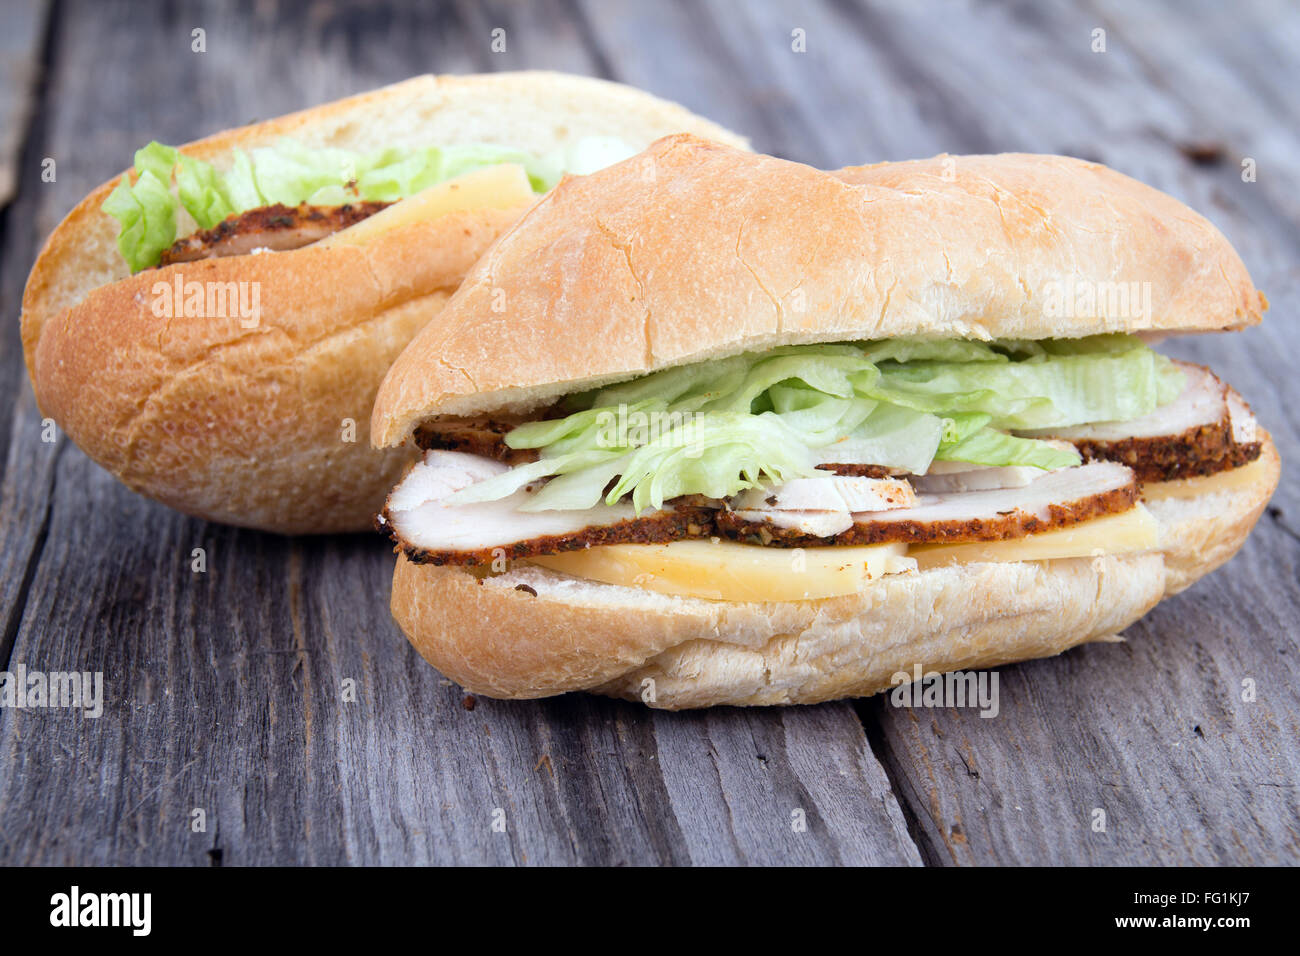 La Turquie fumé mini sandwiches sur la table Banque D'Images